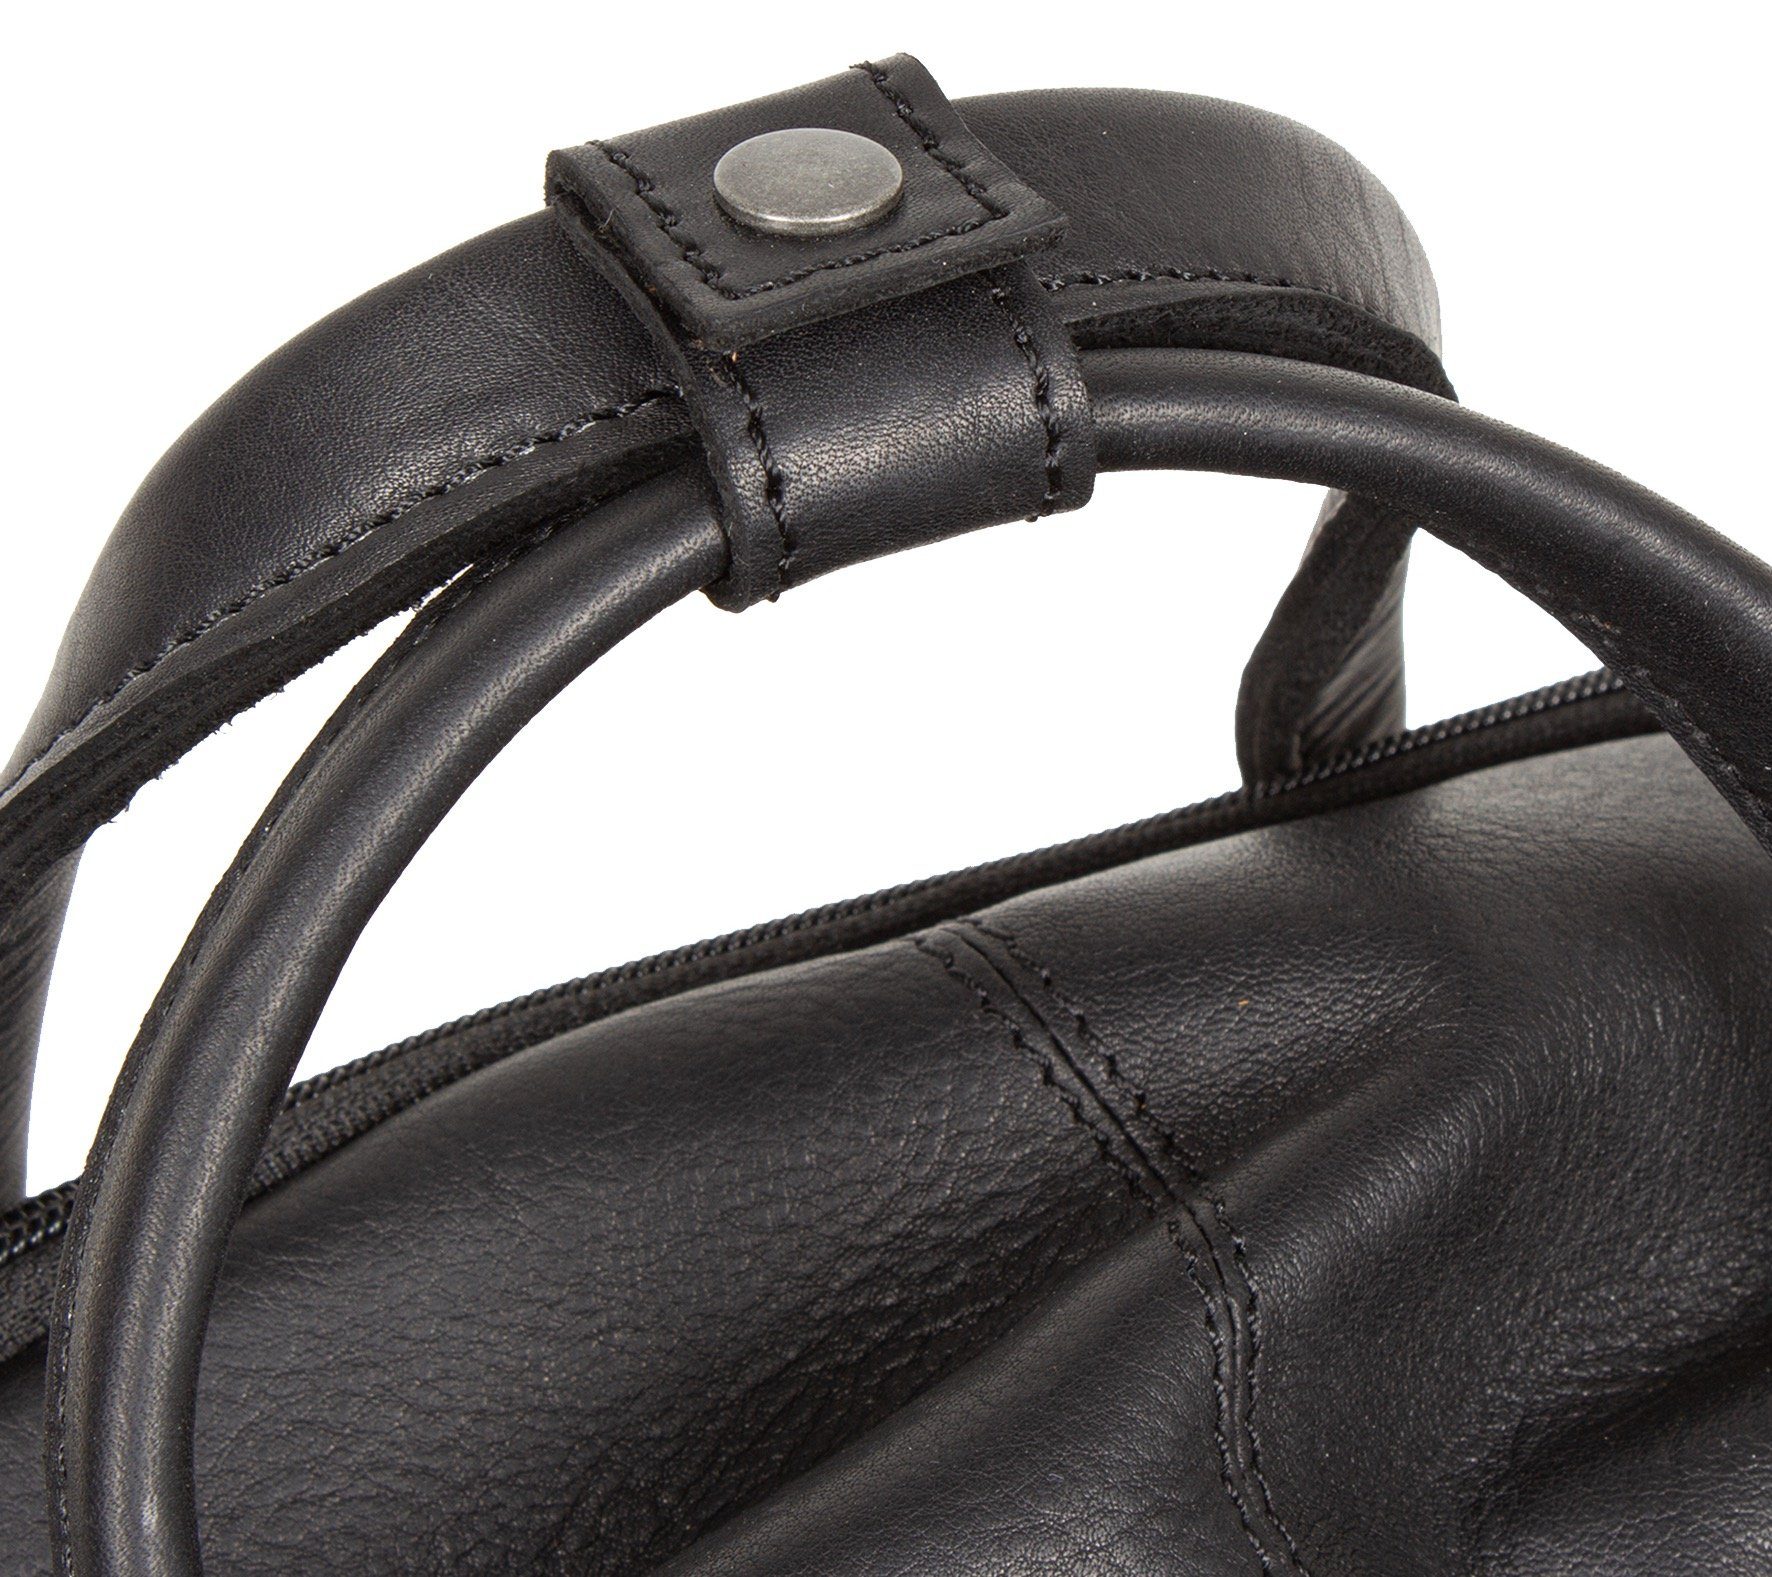 Backpack, schwarz Cityrucksack Catania MUSTANG mit Reißverschluss-Vortasche